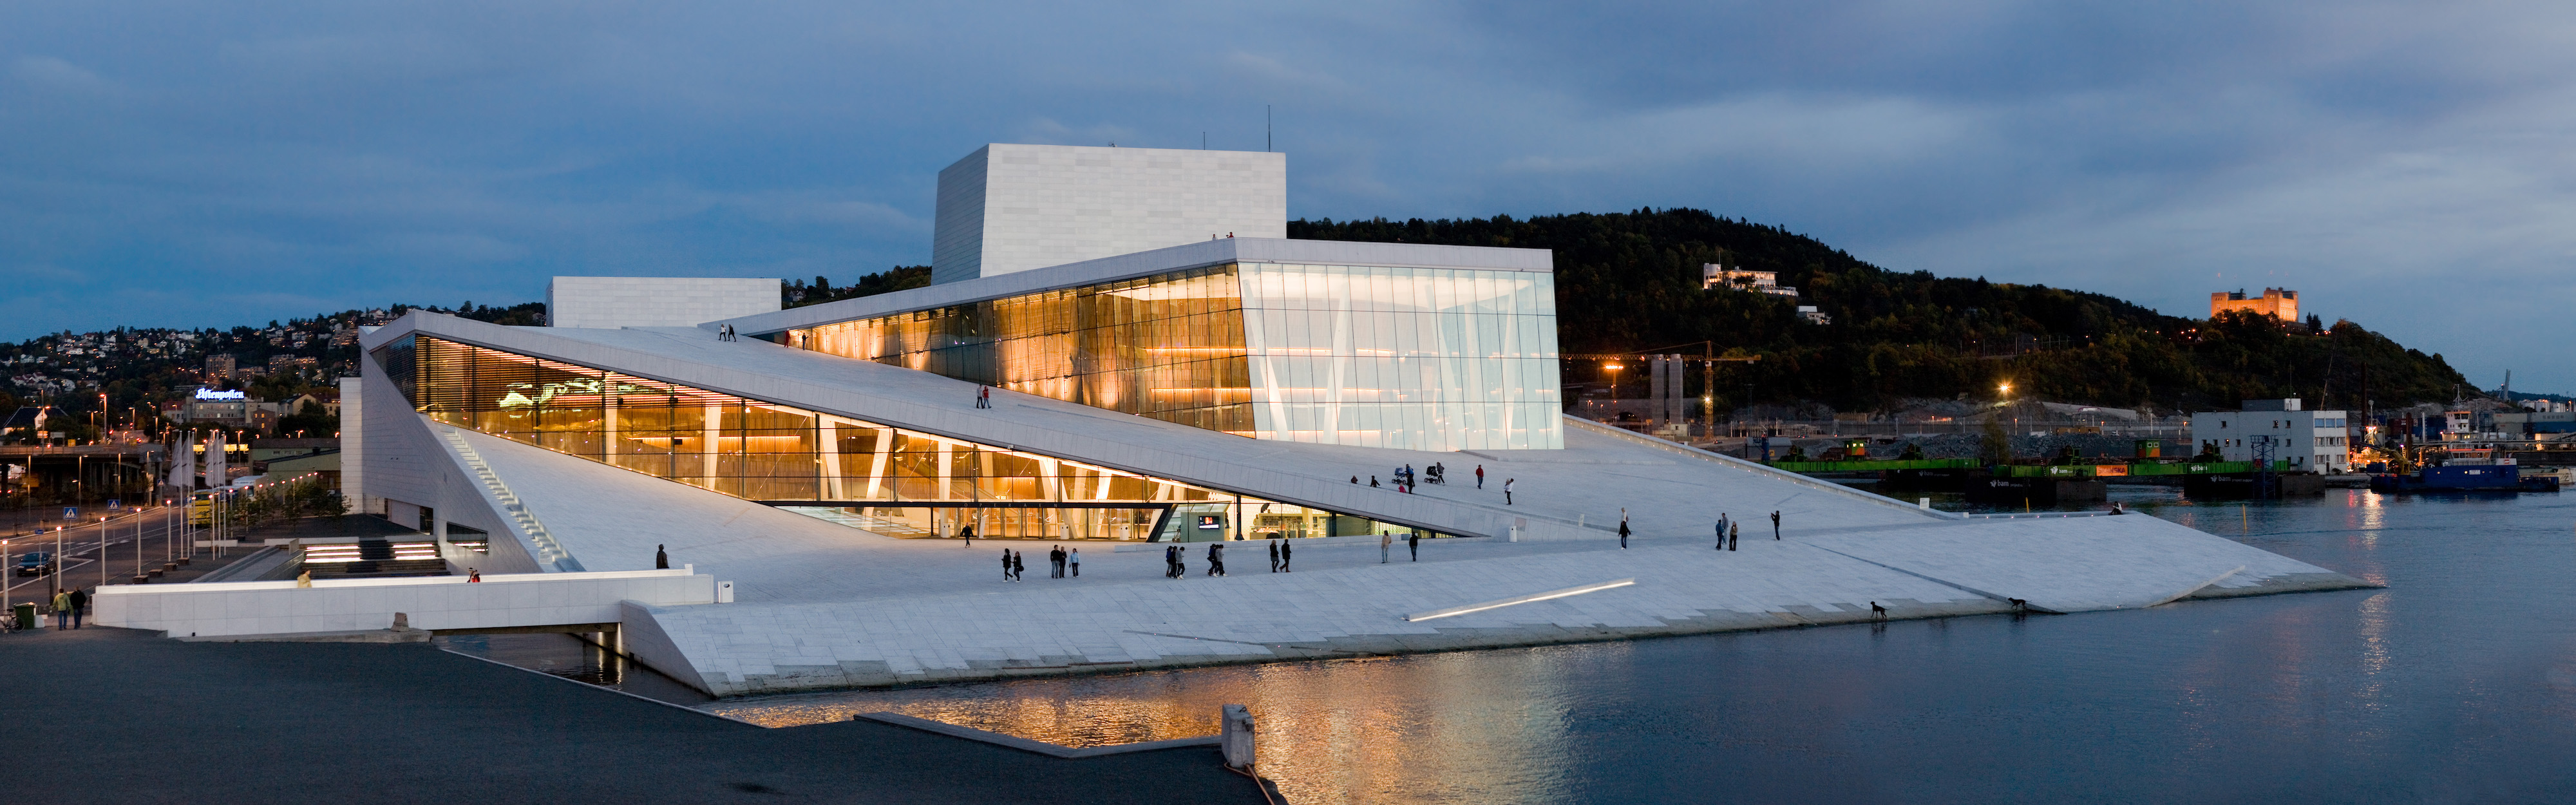 Oslo Opera House by night